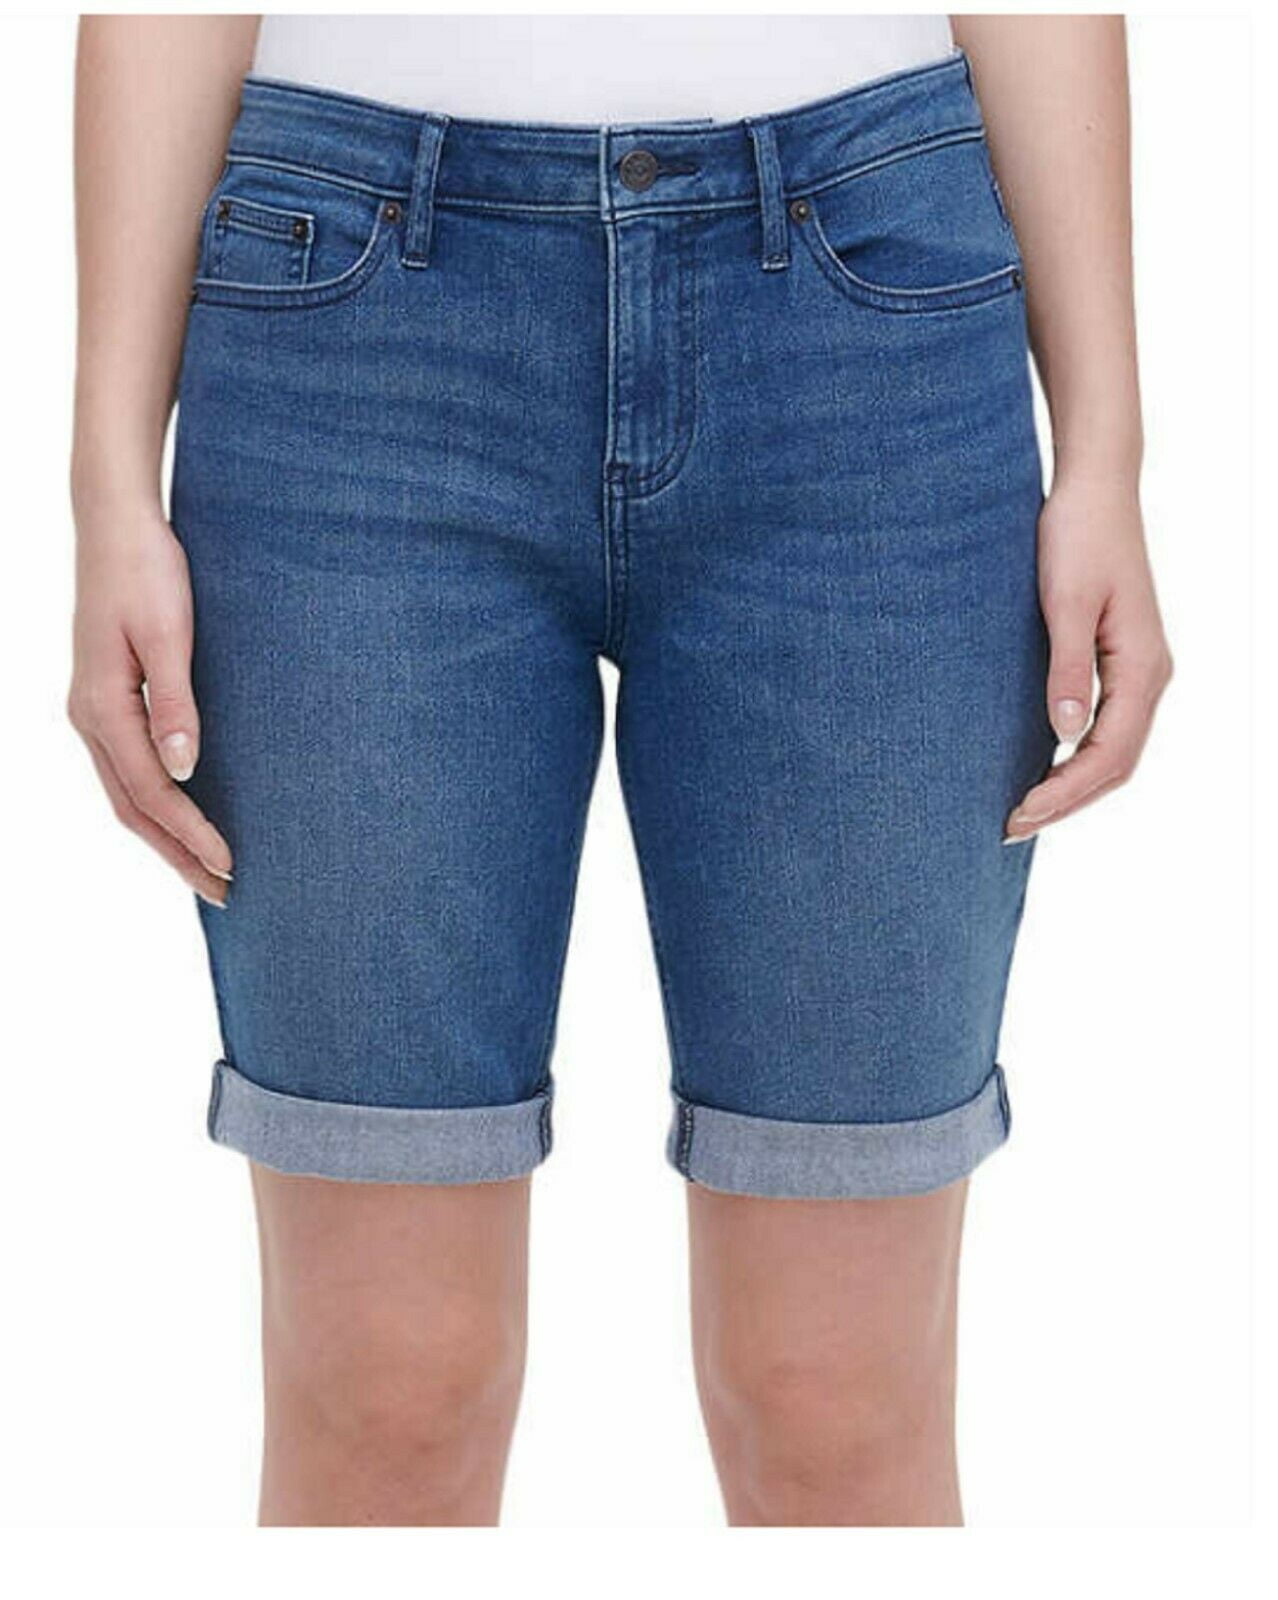 DKNY Jeans Ladies' Bermuda Short